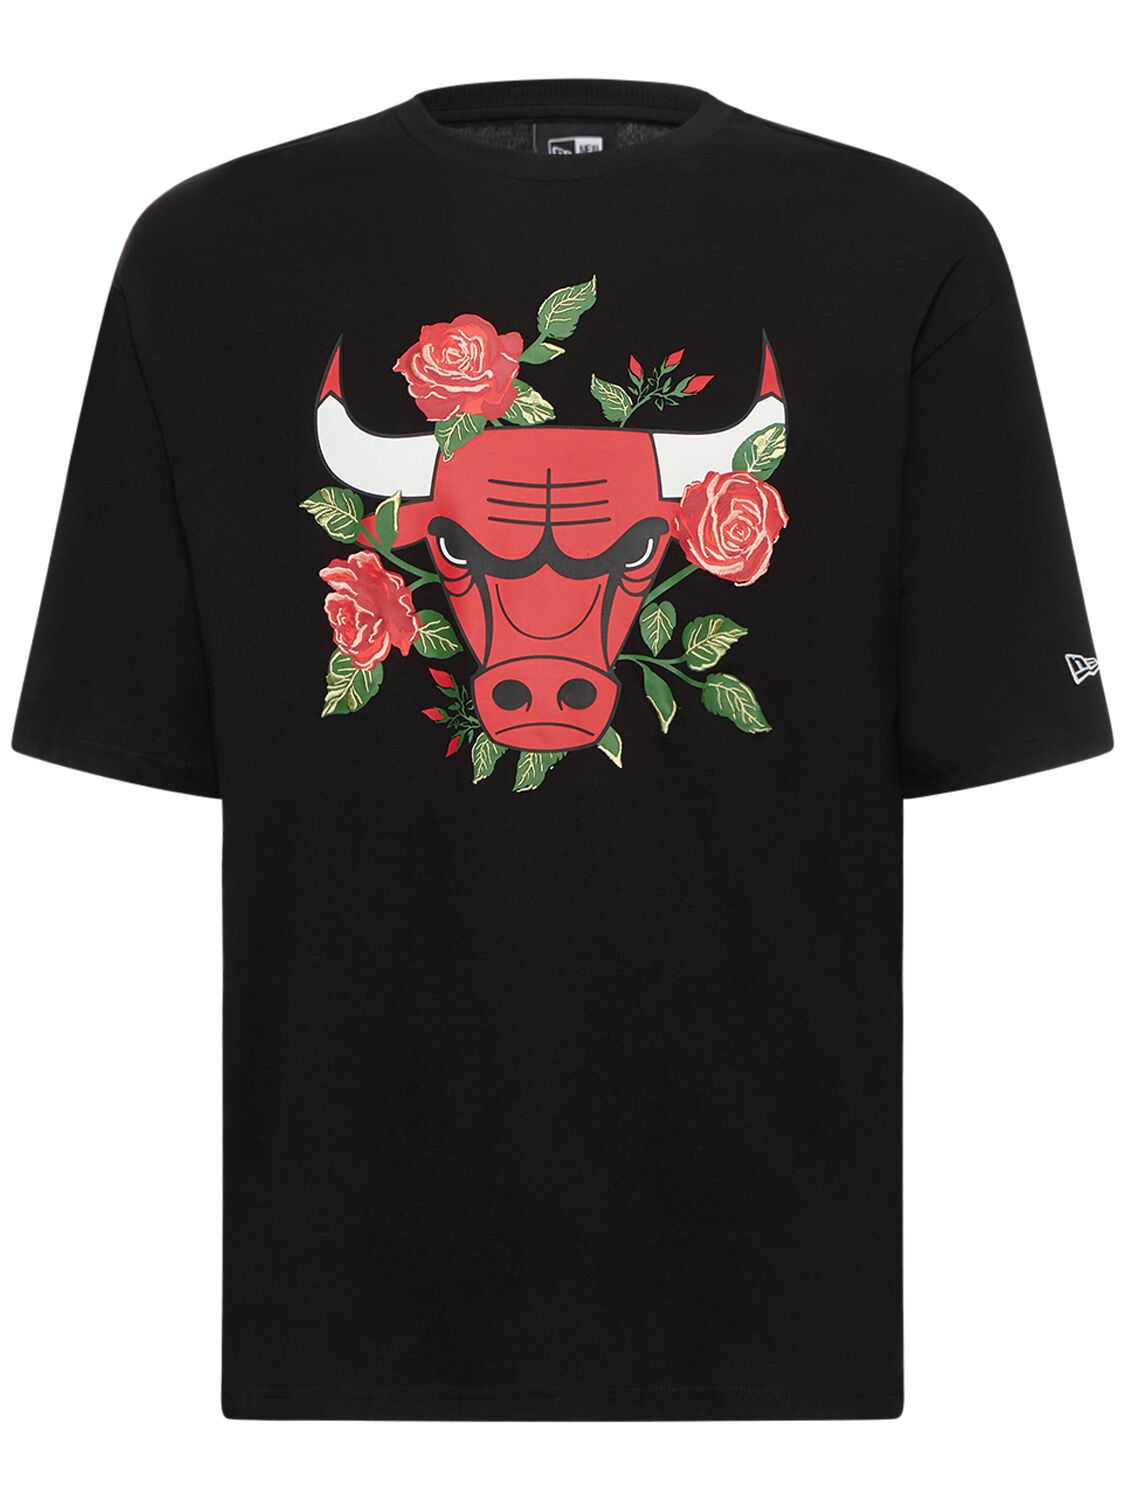 new era chicago bulls t shirt